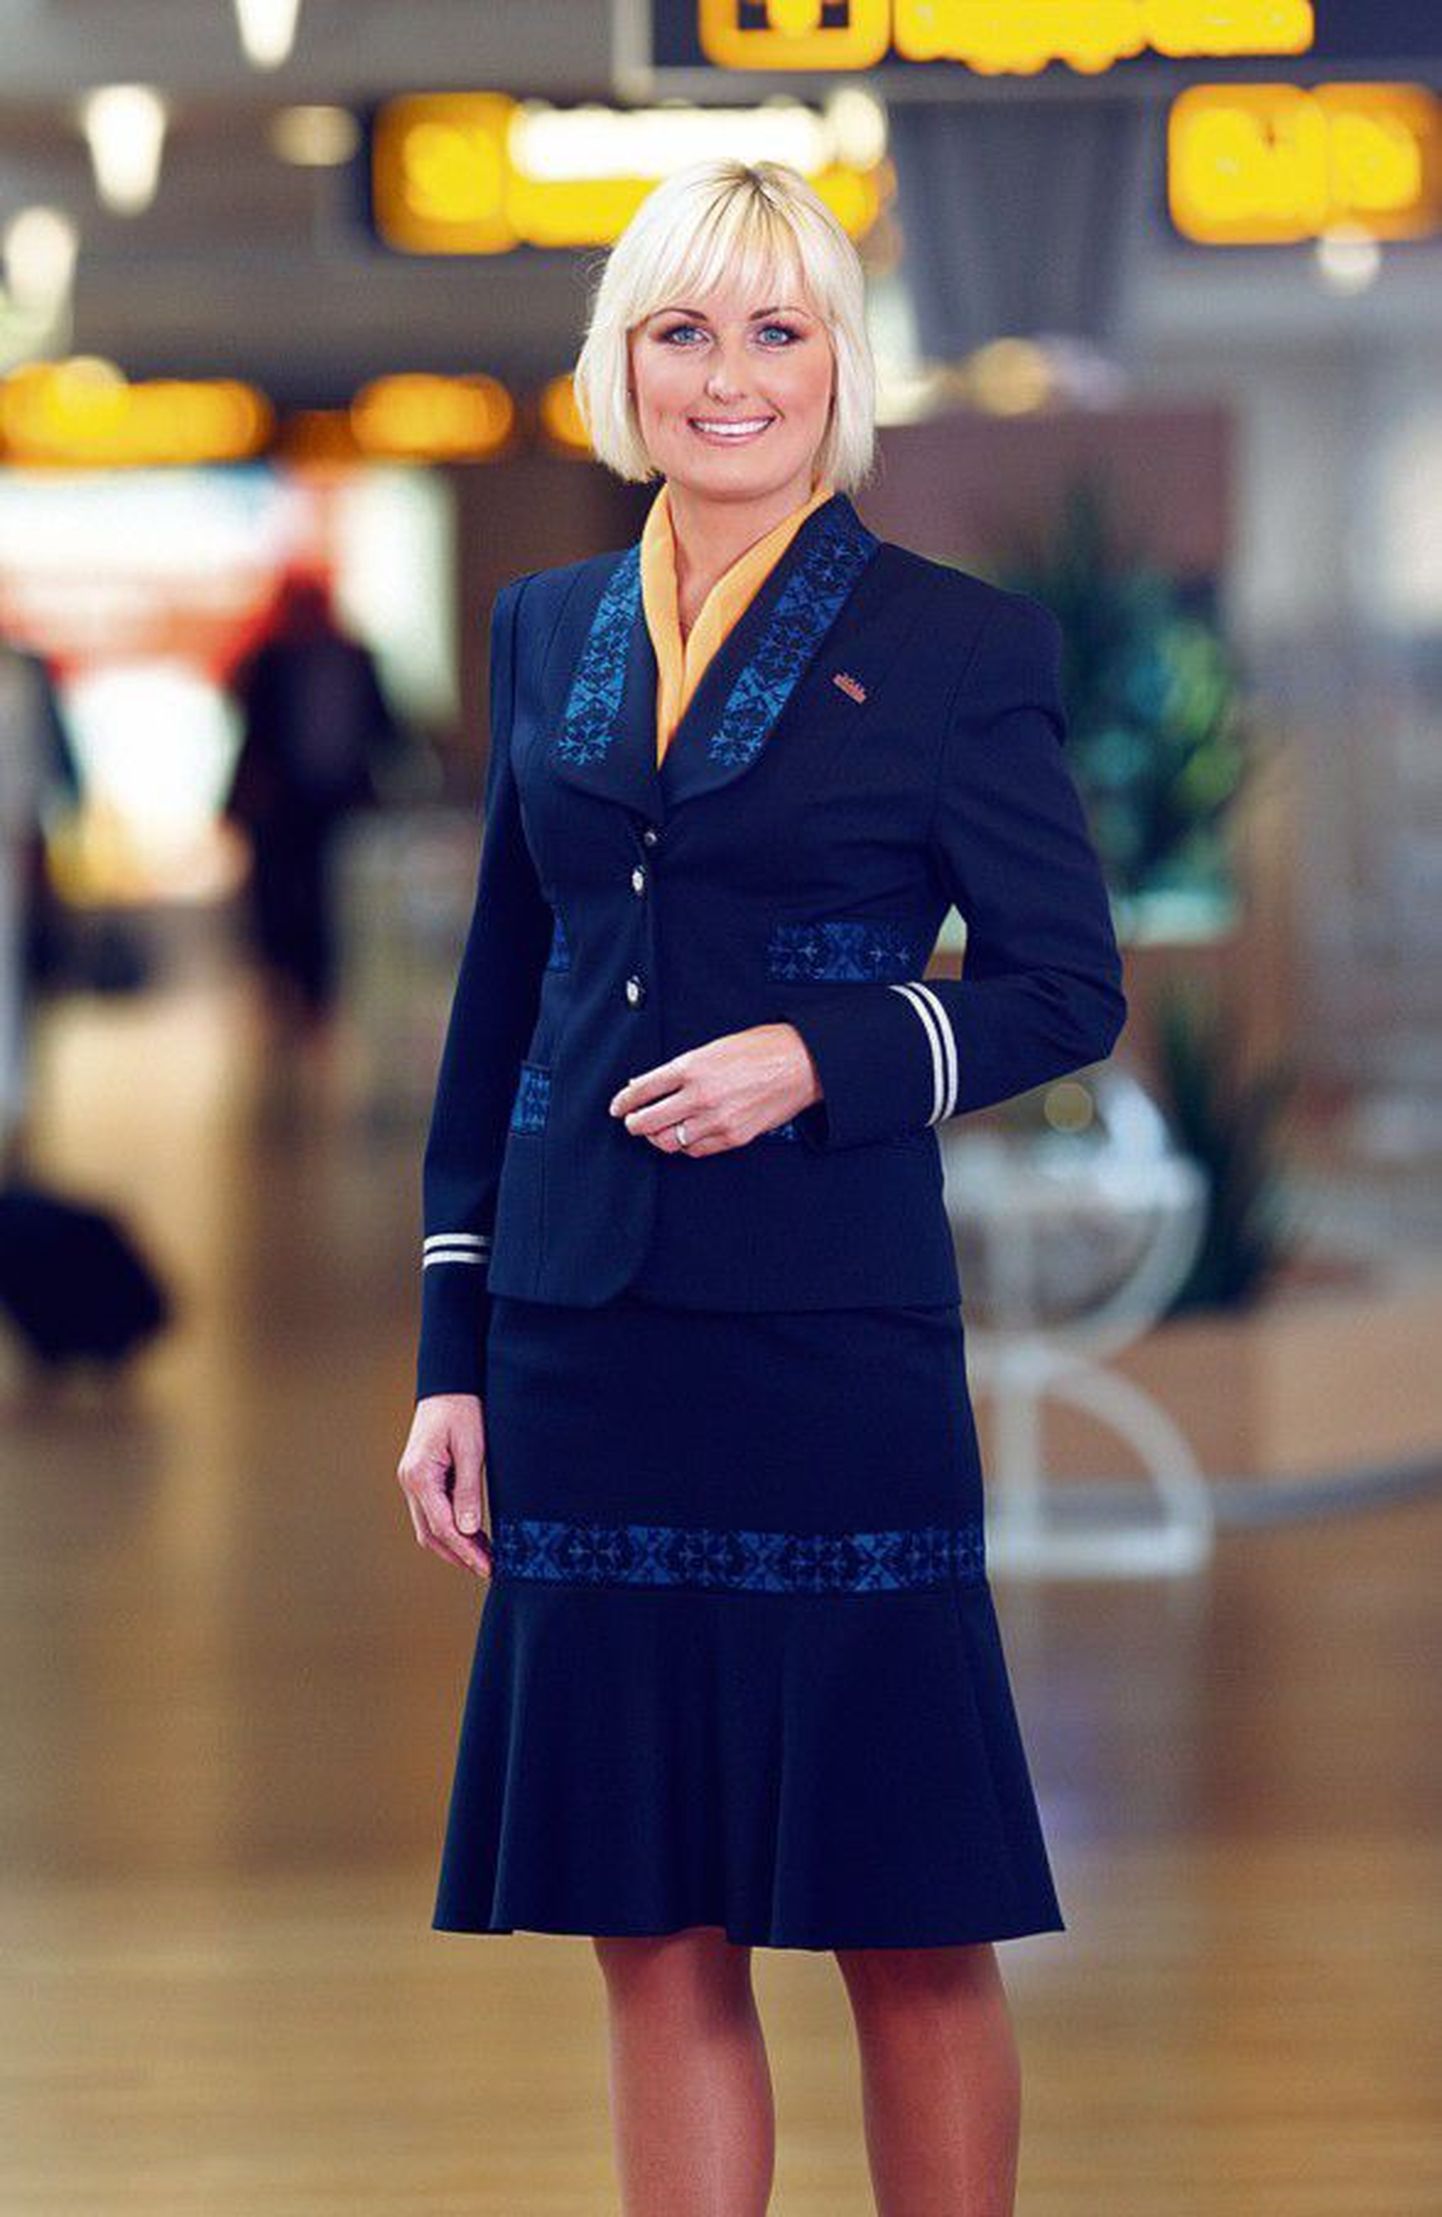 Kõige uuem: selle kuu algusest kannavad stjuardessid Tiina Talumehe moekalt rõhutatud õla ja rahvuslike, pisikestest lennukitest koosnevate tikandisiiludega vormi. Modelliks lennufirma kliendisuhete spetsialist Liina Mäeväli.